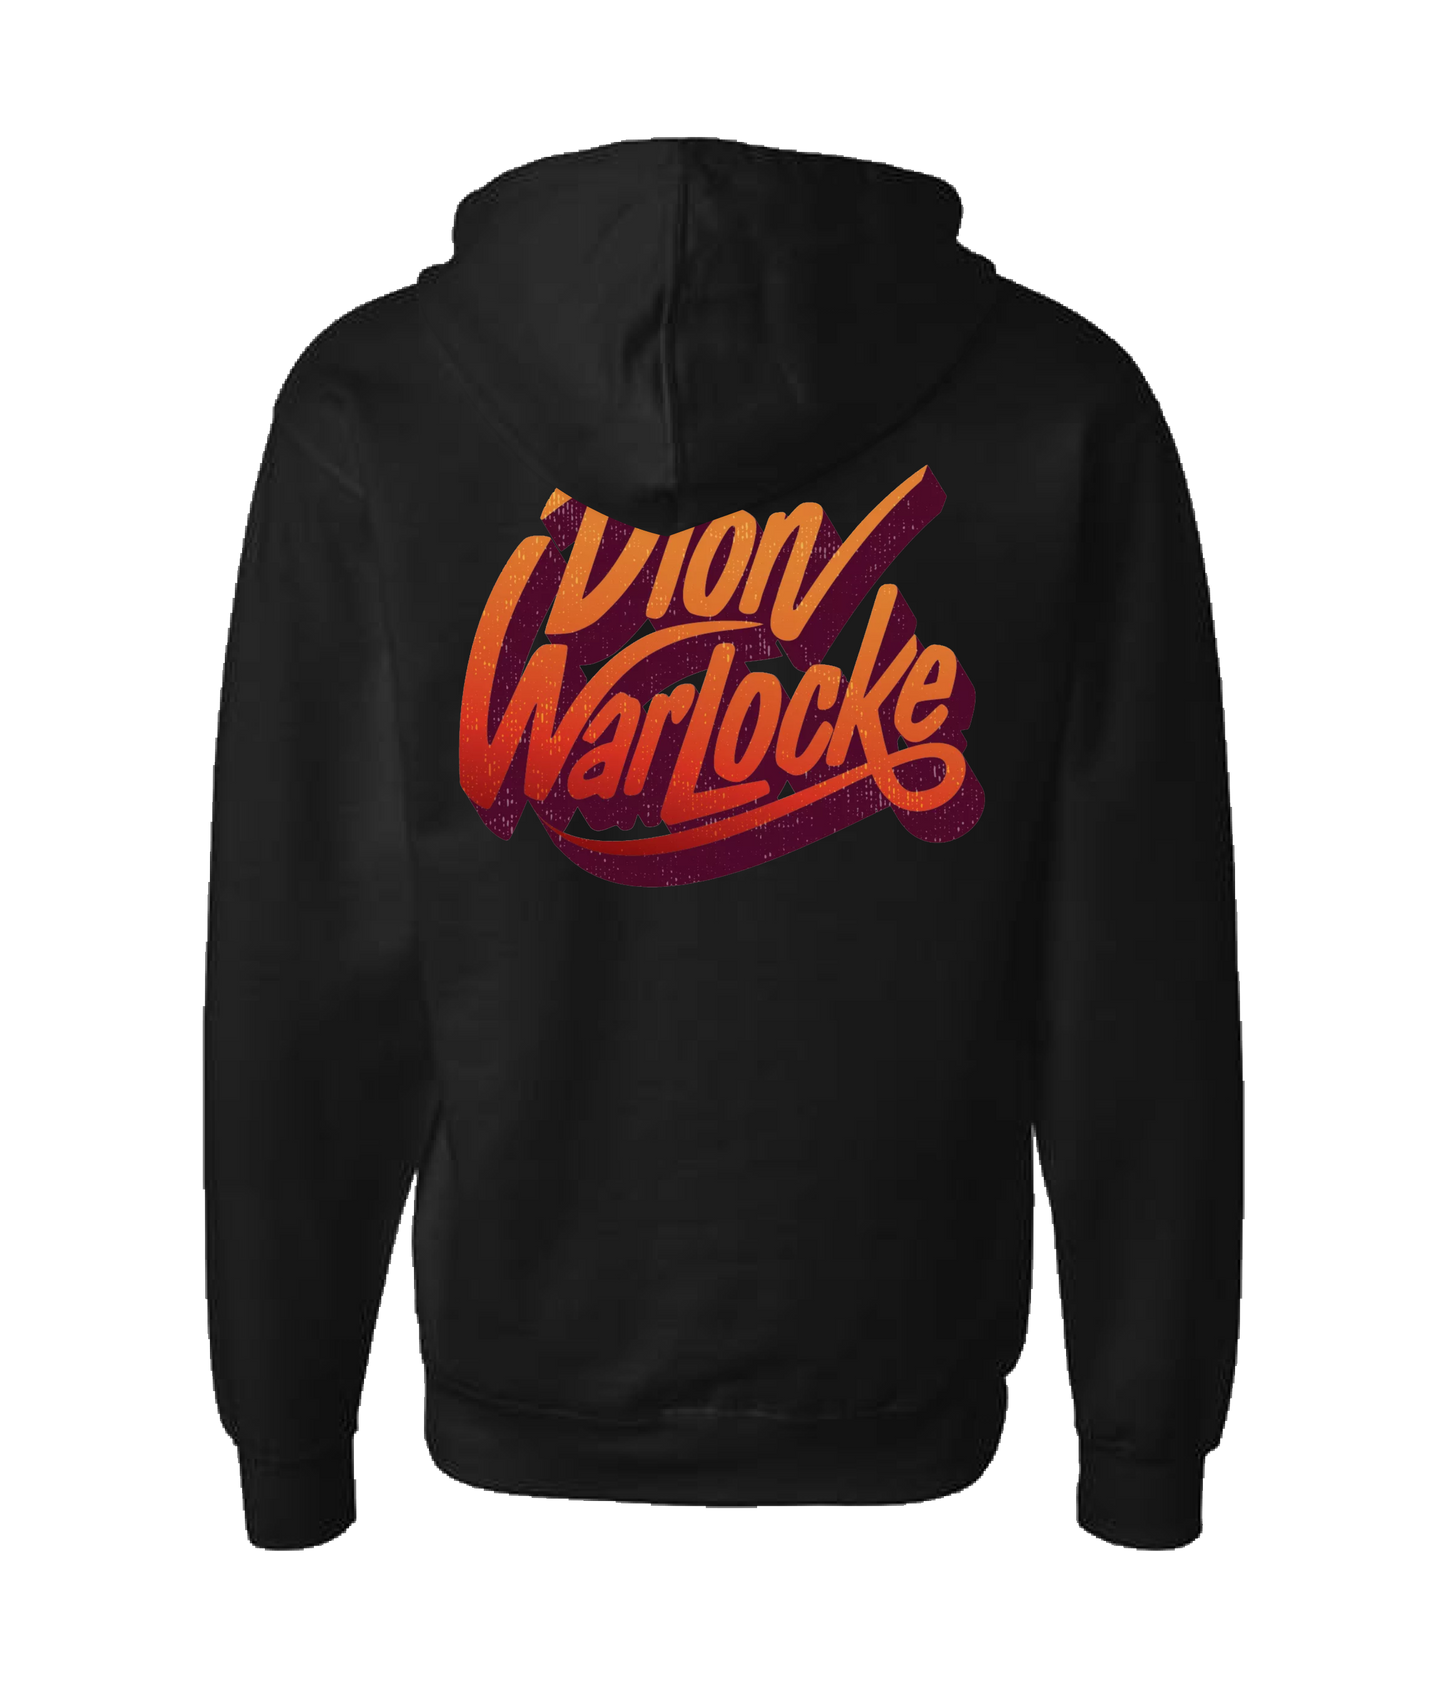 Dion Warlocke - Weathered Logo - Black Zip Up Hoodie